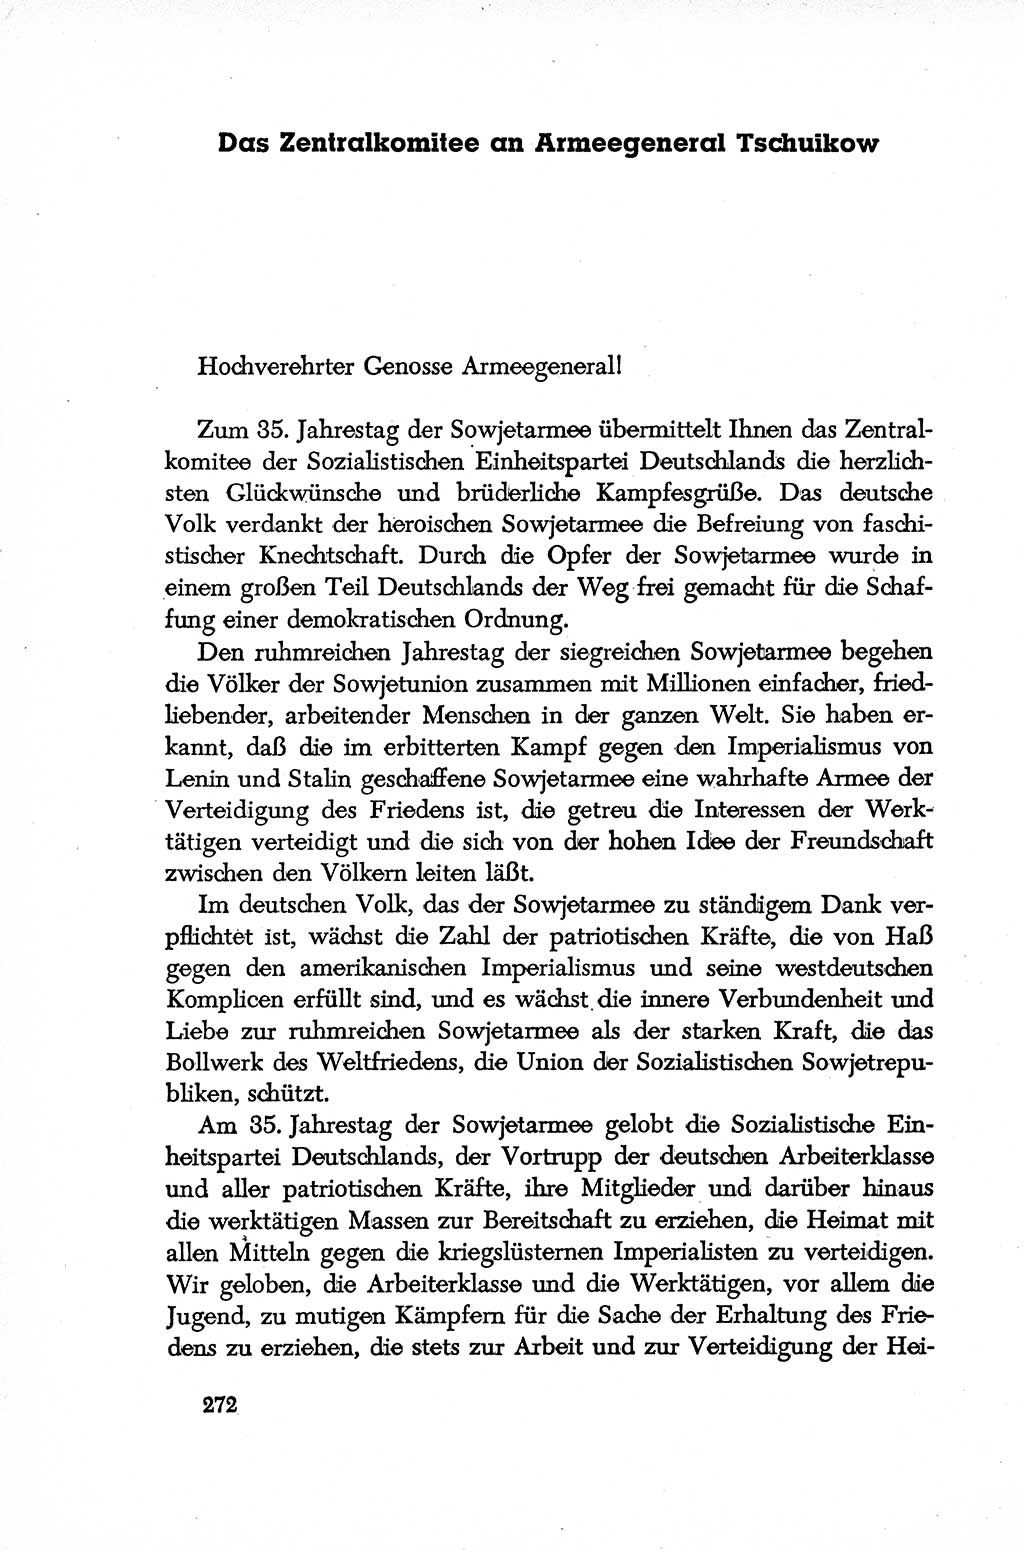 Dokumente der Sozialistischen Einheitspartei Deutschlands (SED) [Deutsche Demokratische Republik (DDR)] 1952-1953, Seite 272 (Dok. SED DDR 1952-1953, S. 272)